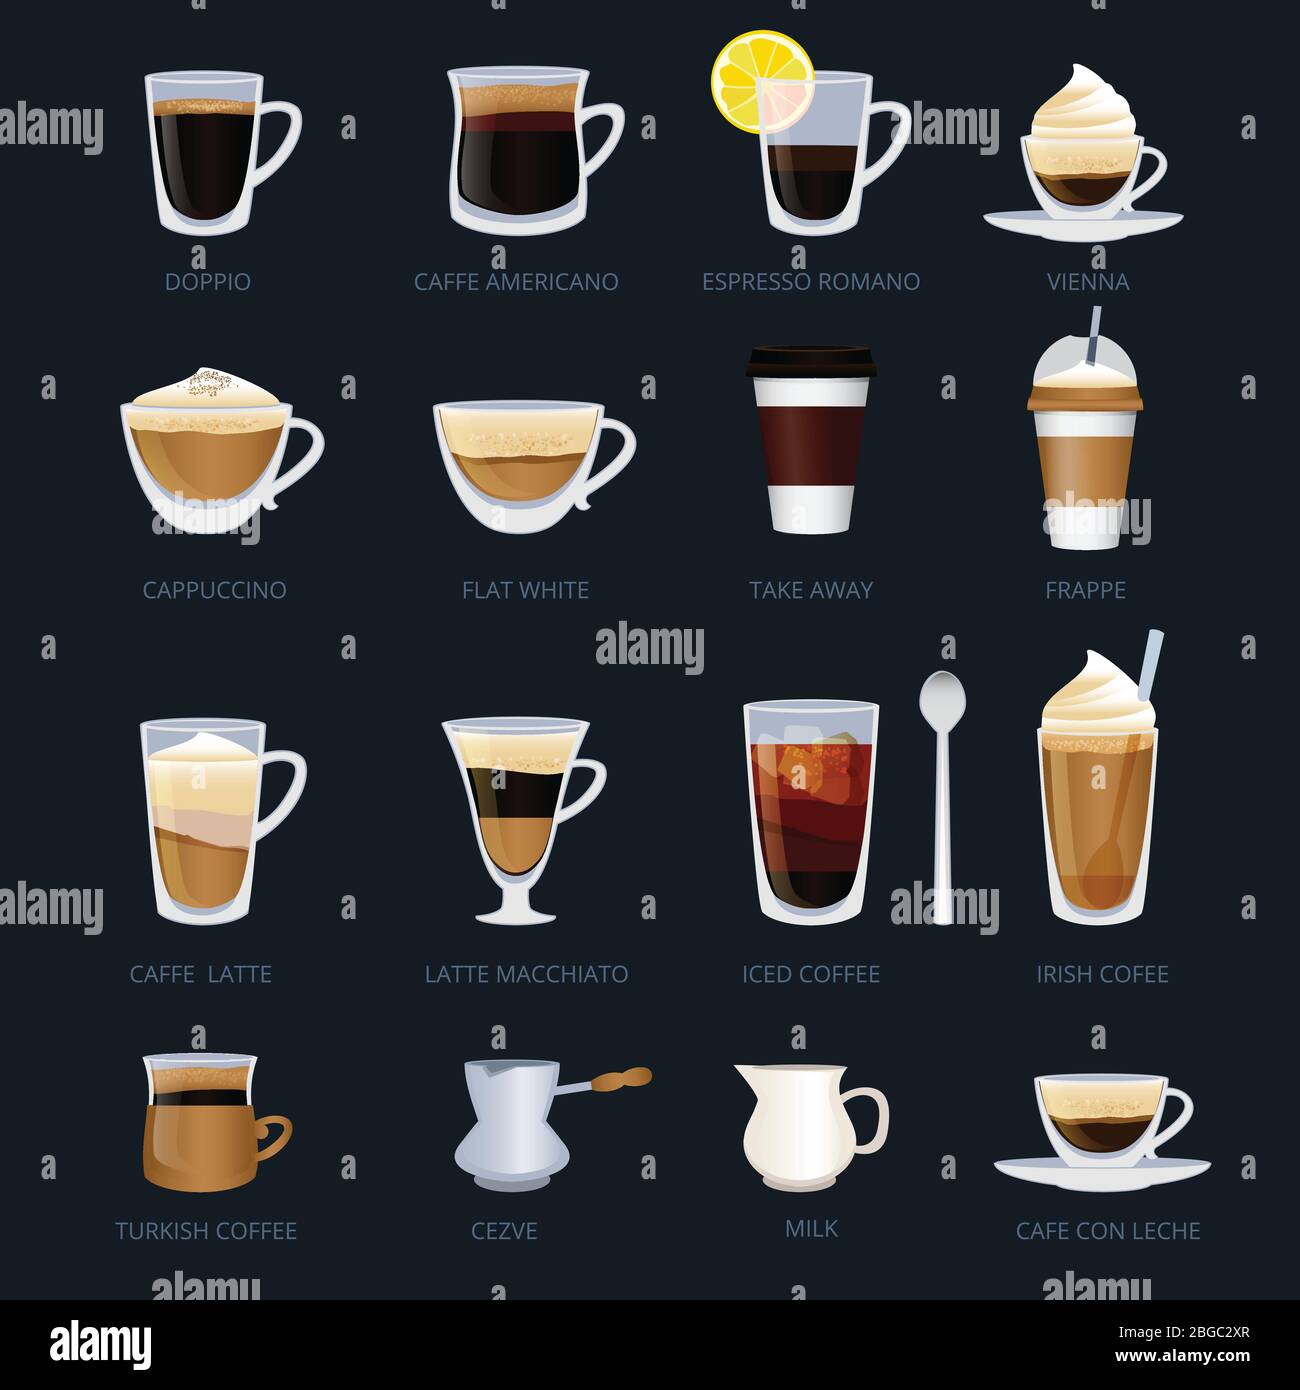 Tassen mit verschiedenen Arten von Kaffee. Espresso, Cappuccino, Macchiato und andere. Vektor-Illustrationen im Cartoon-Stil gesetzt Stock Vektor